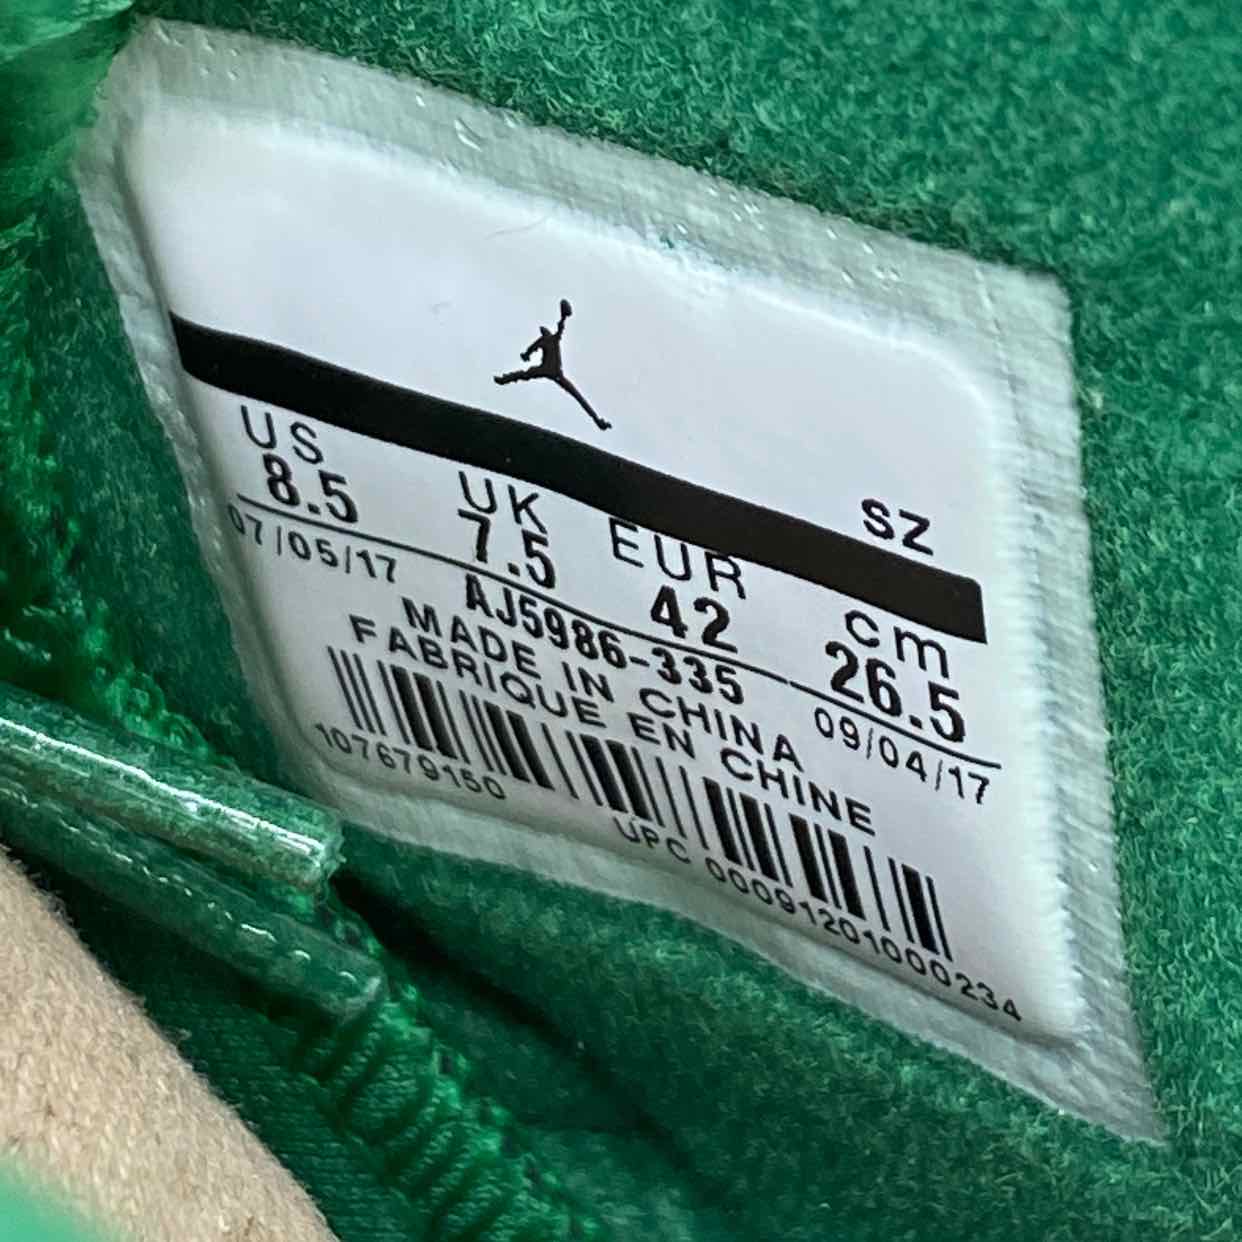 Air Jordan 6 Retro &quot;Gatorade Green&quot; 2017 New Size 8.5